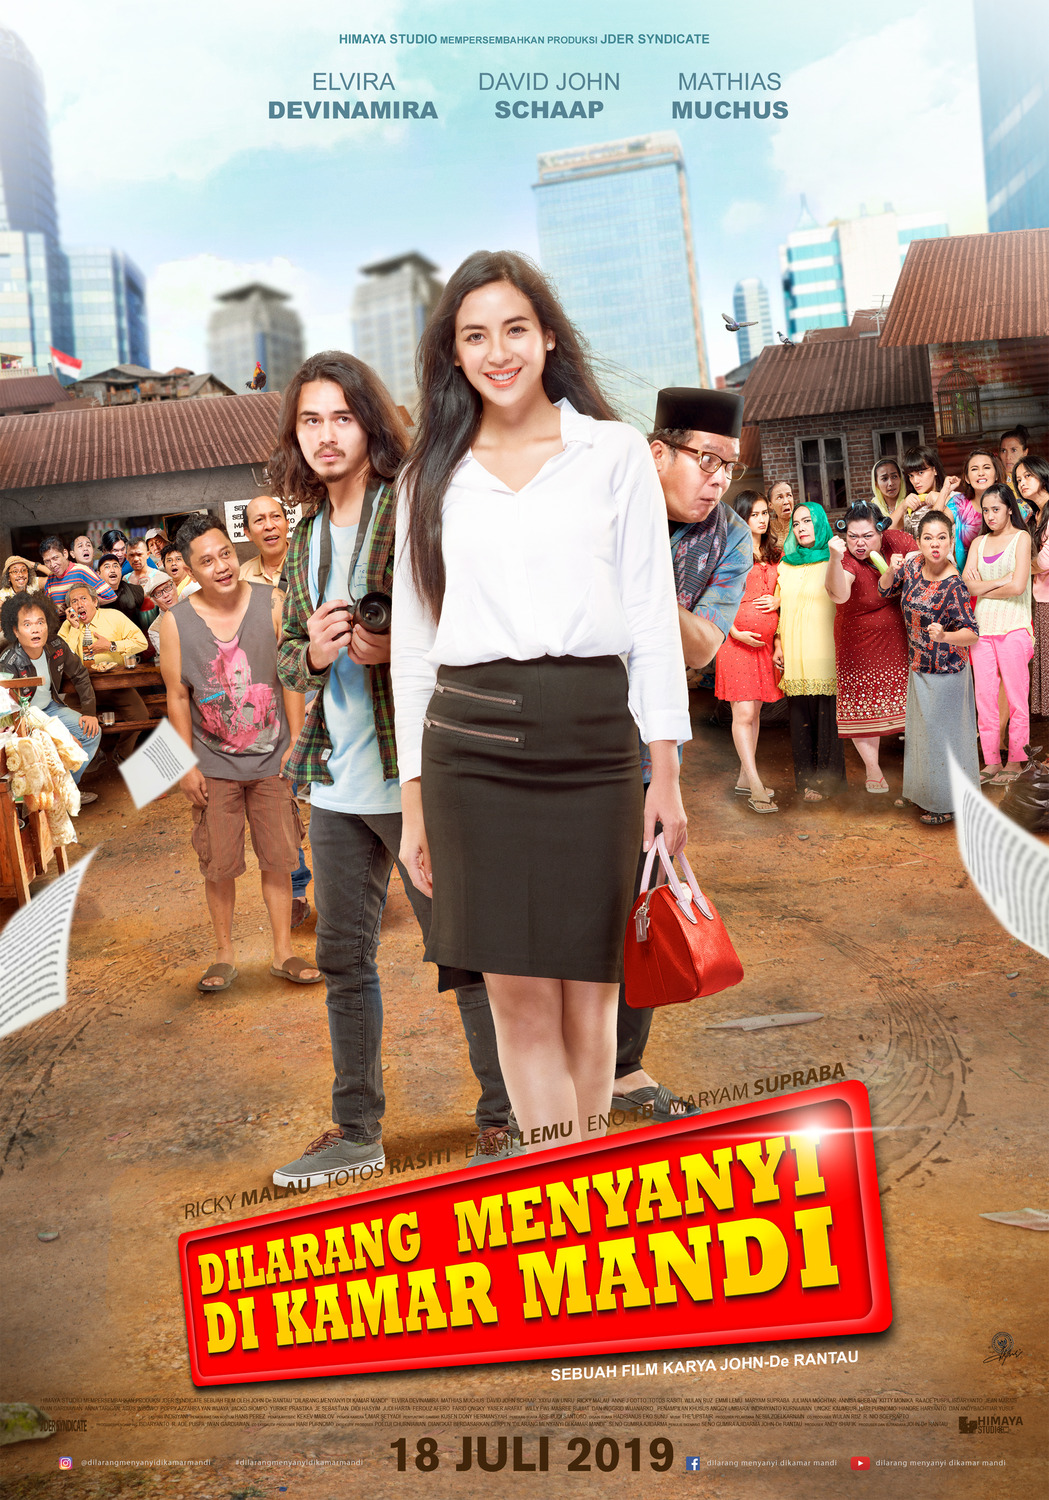 Extra Large Movie Poster Image for Dilarang Menyanyi di Kamar Mandi (#2 of 2)